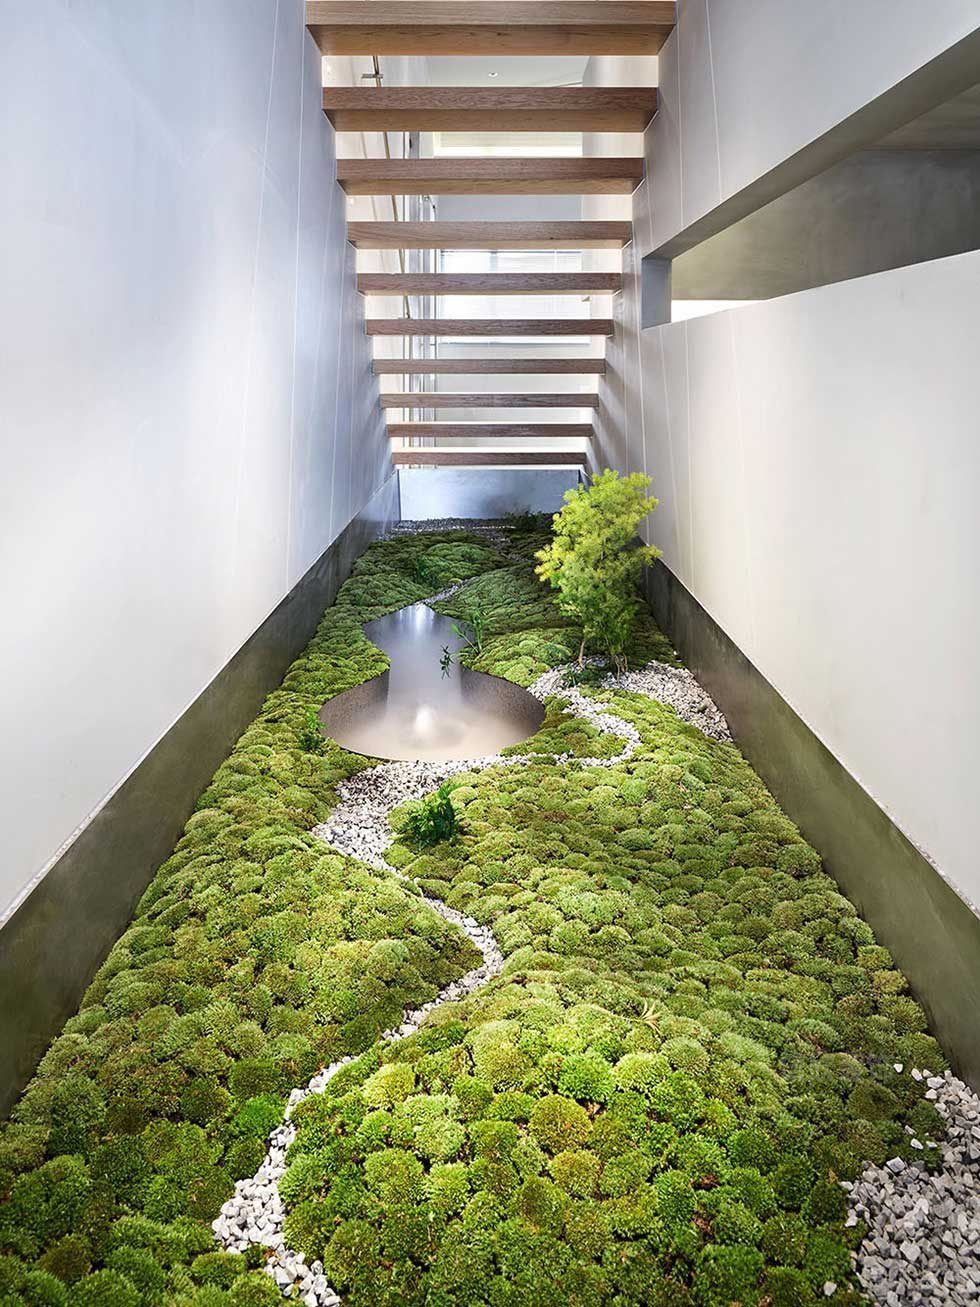 现代简约风格办公室楼梯空间绿植景观装修图